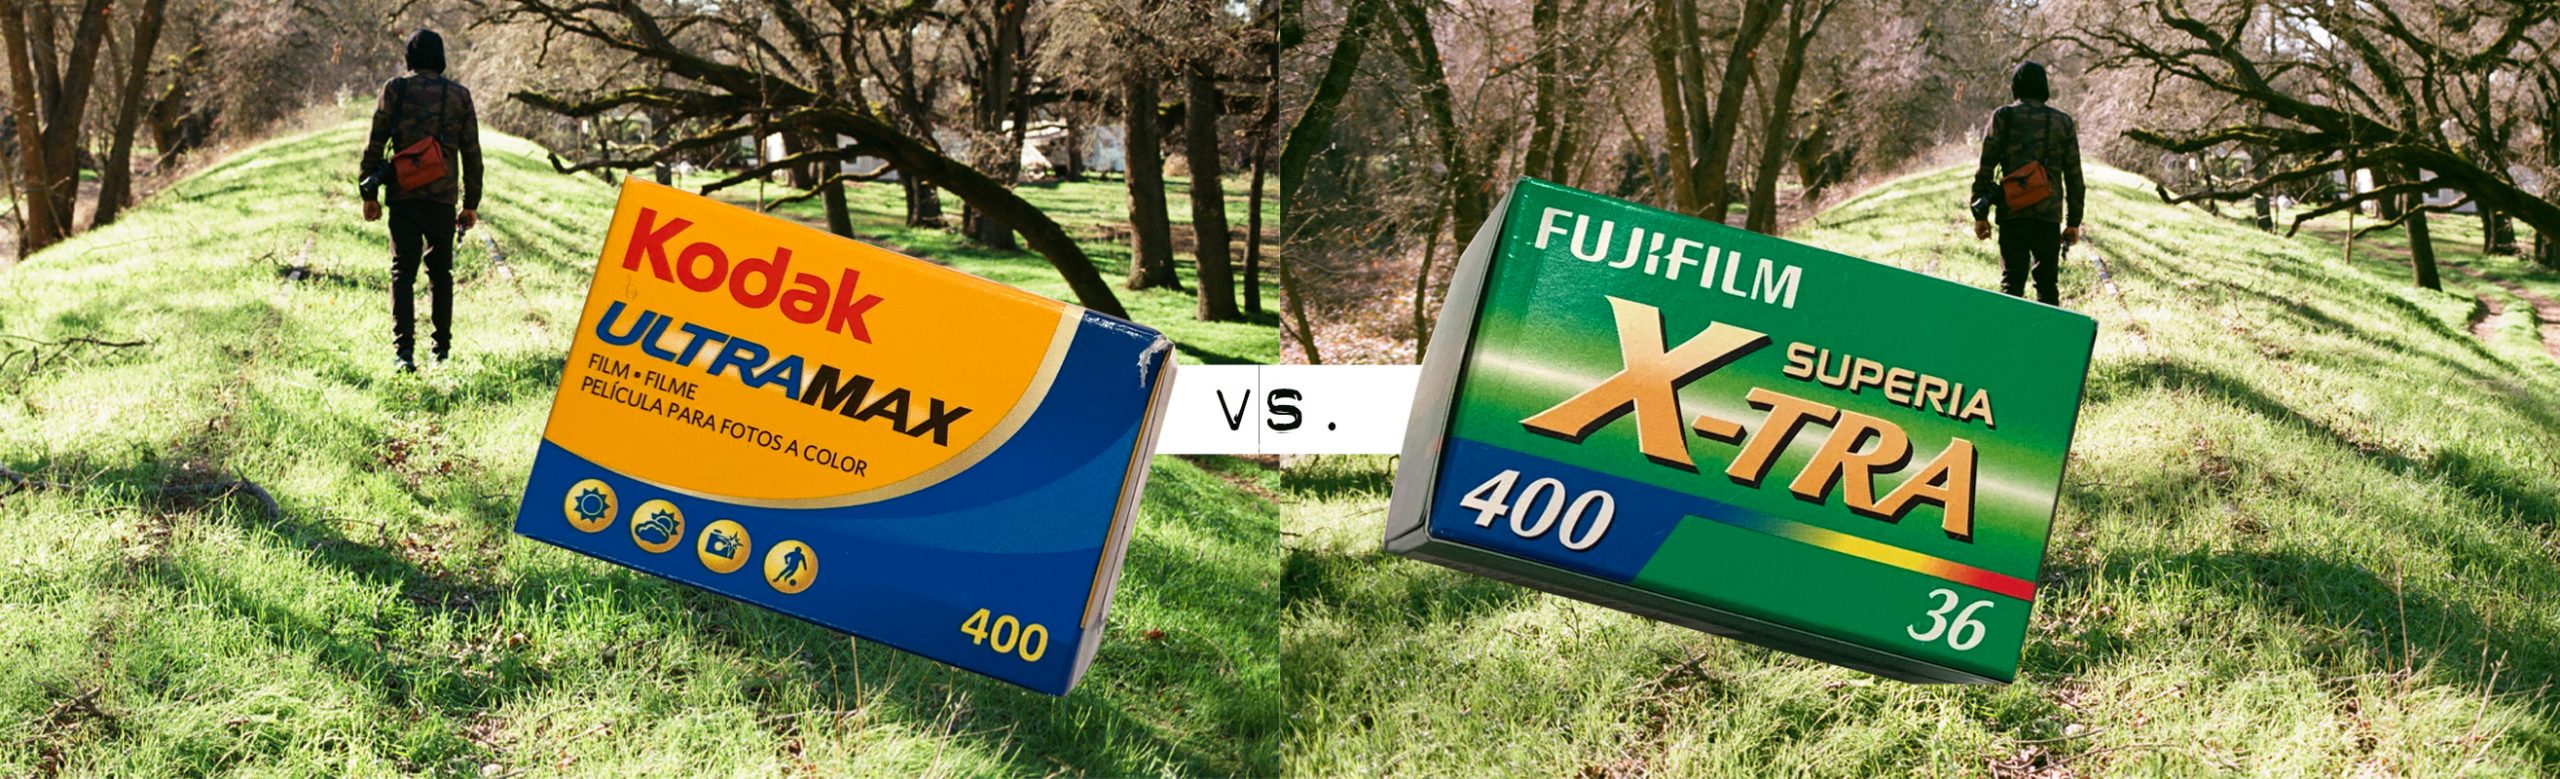 Kodak Utramax 400 vs. FujiFilm Superia X-TRA 400 - Comparision